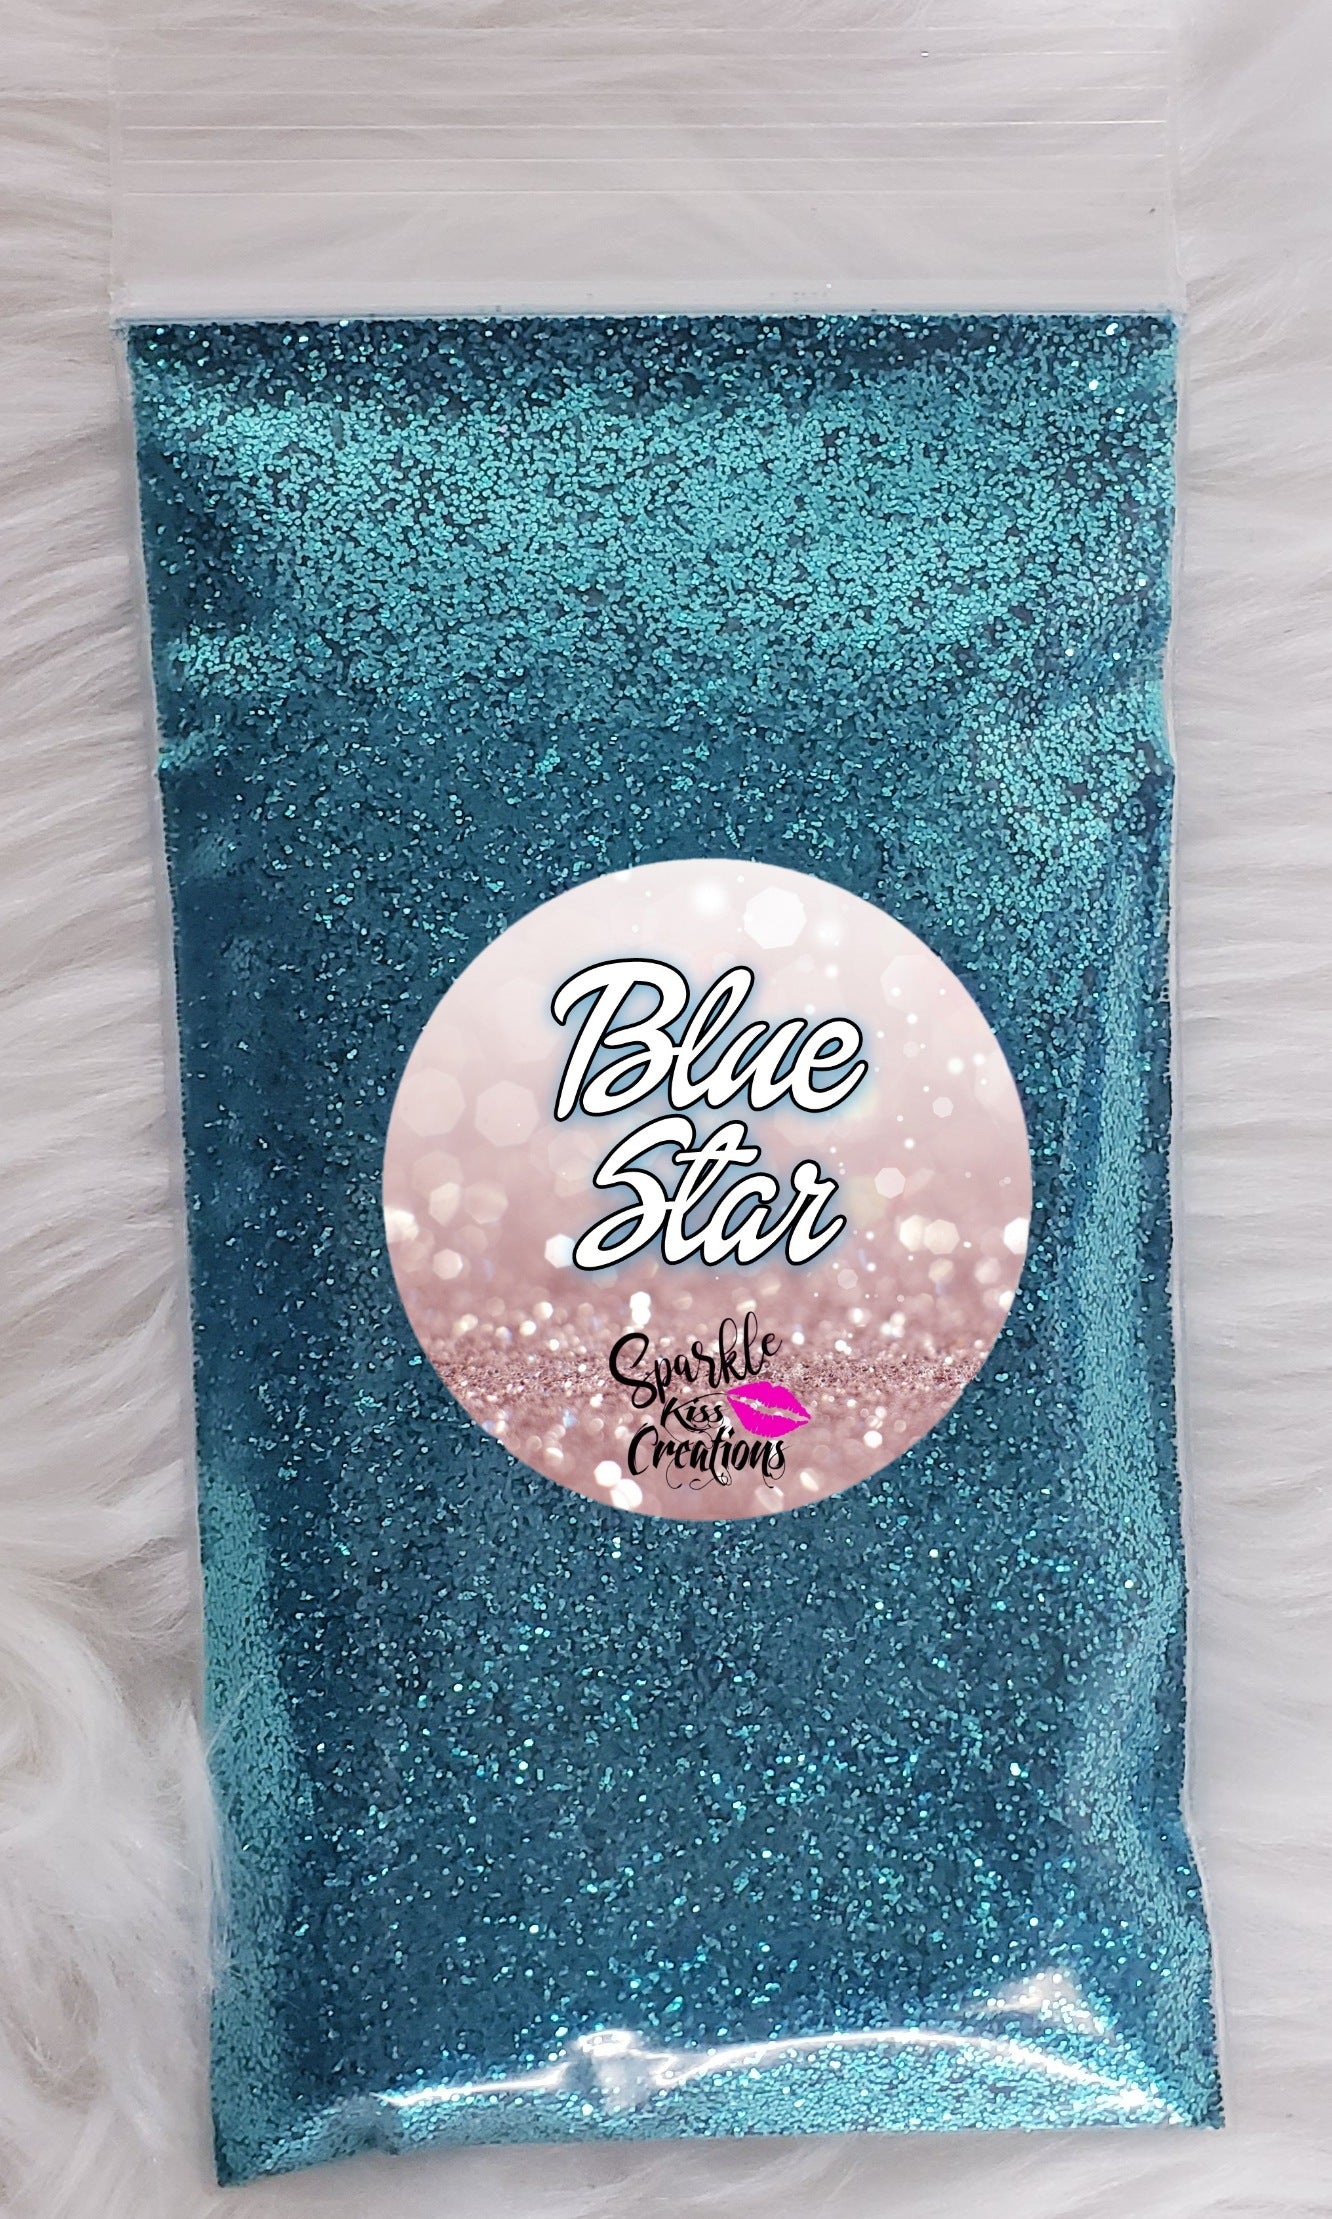 Blue Star-Sparkle Kiss Creations Glitz Glitter